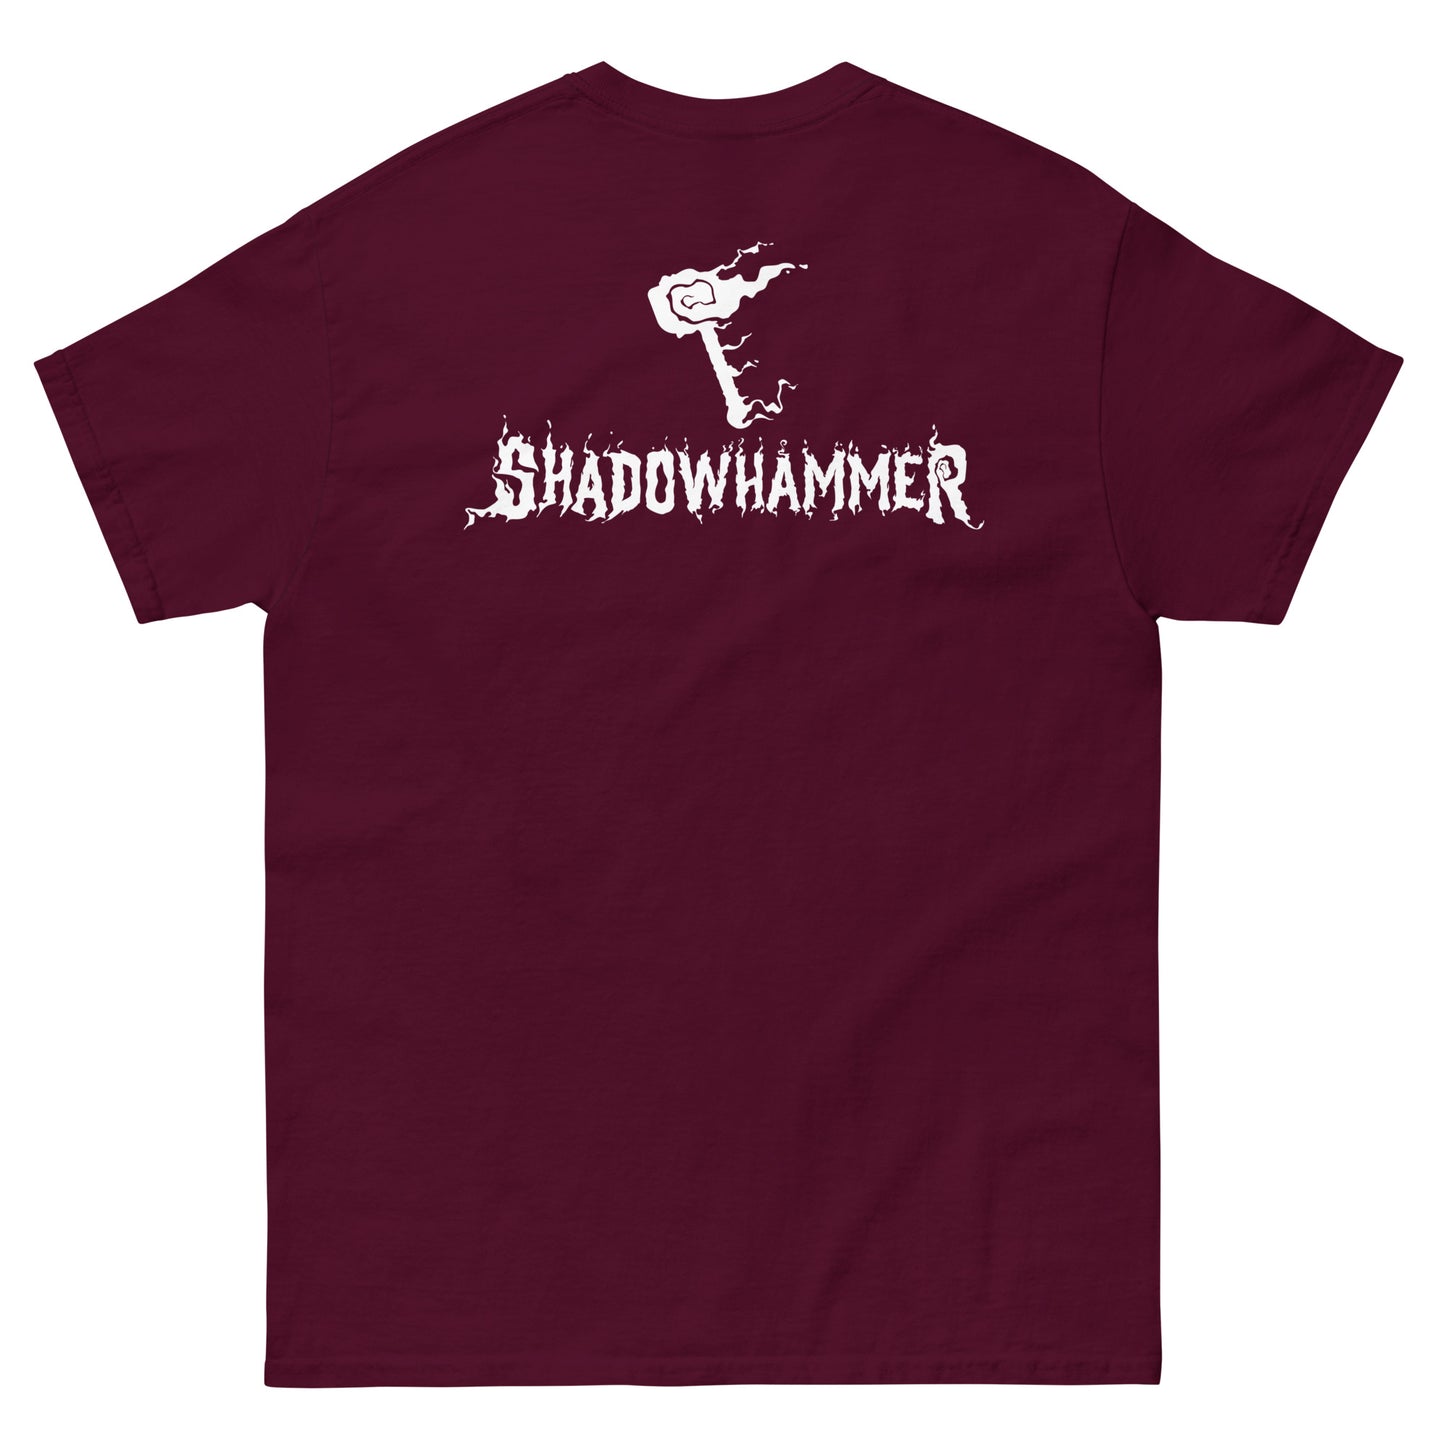 Shadowhammer Hammer Tee